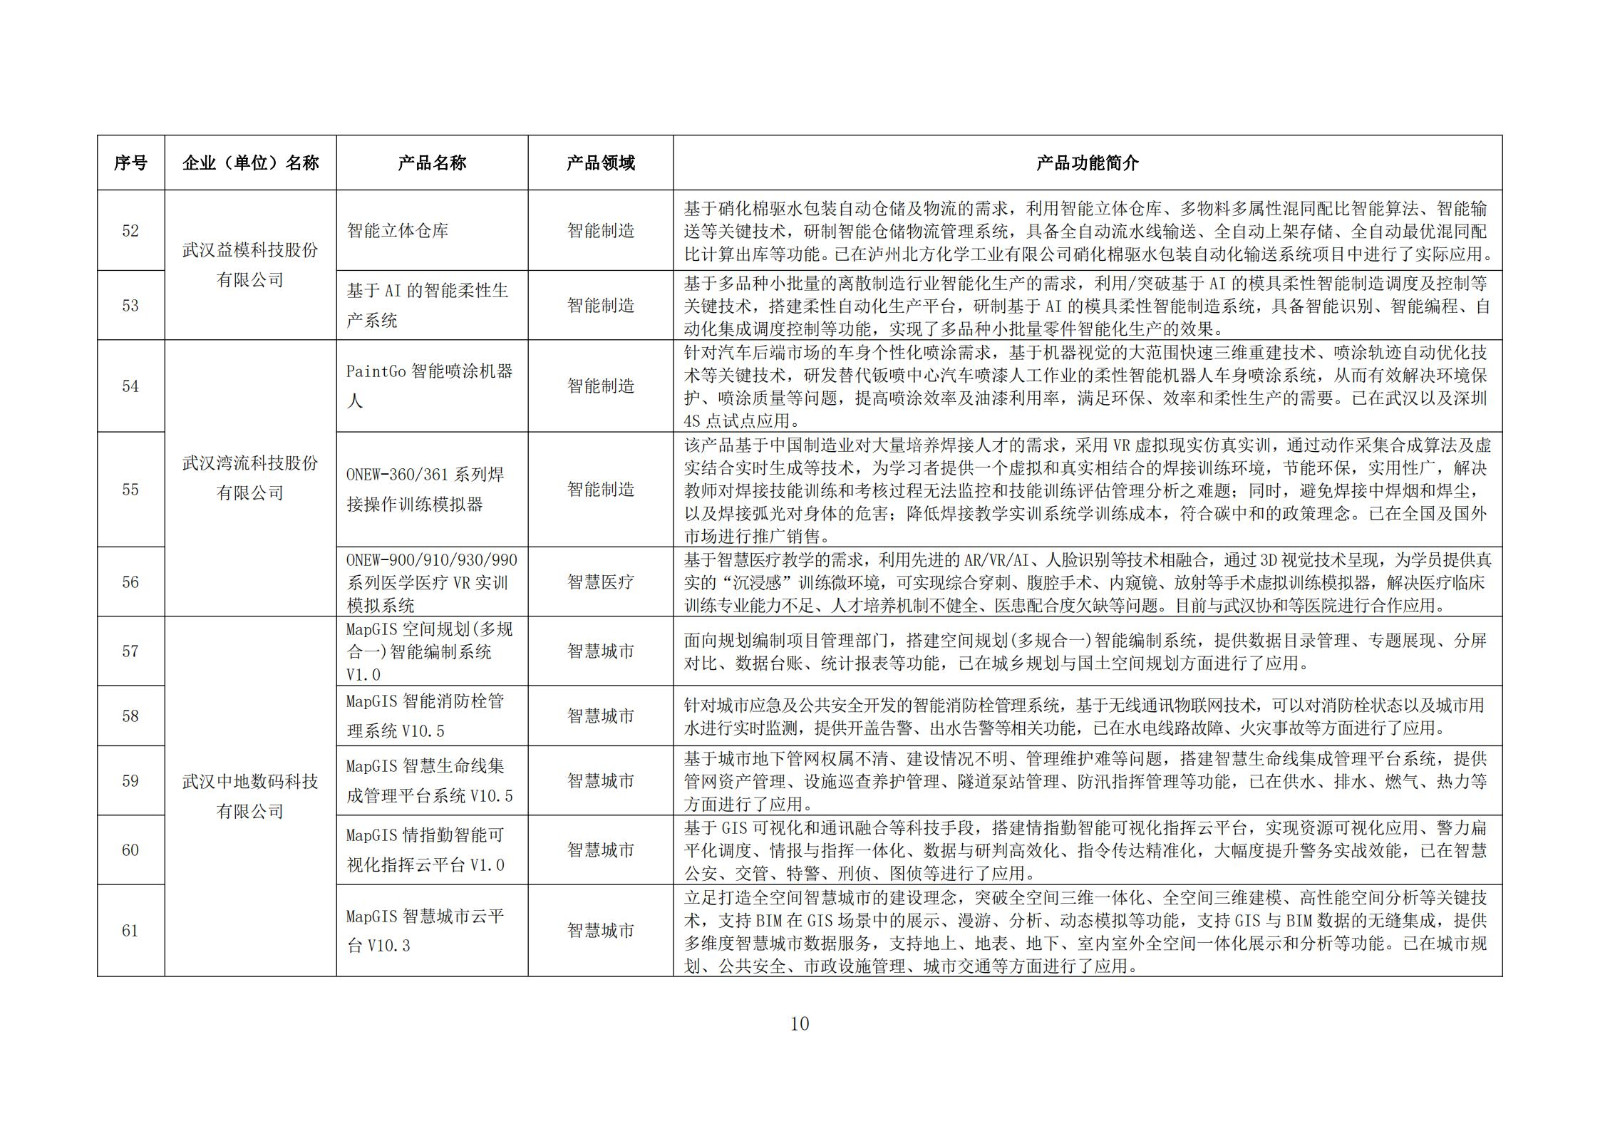 武汉新一代人工智能产品目录（首批）_09.jpg